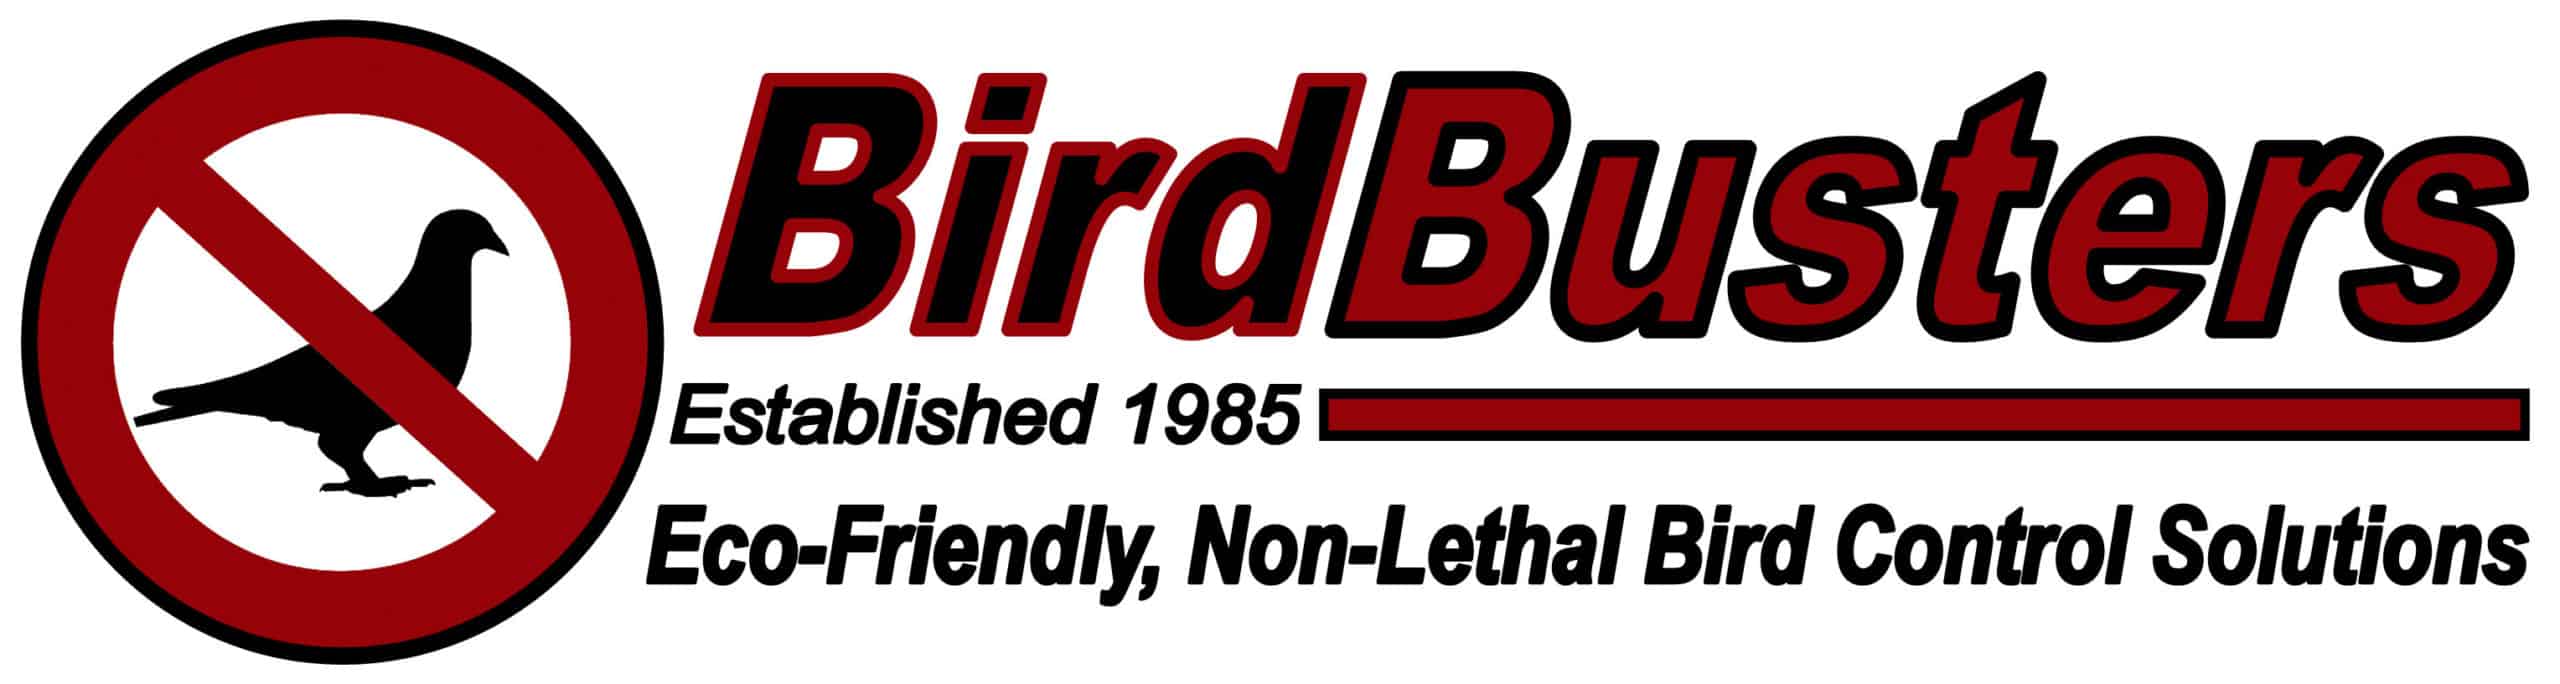 BirdBusters